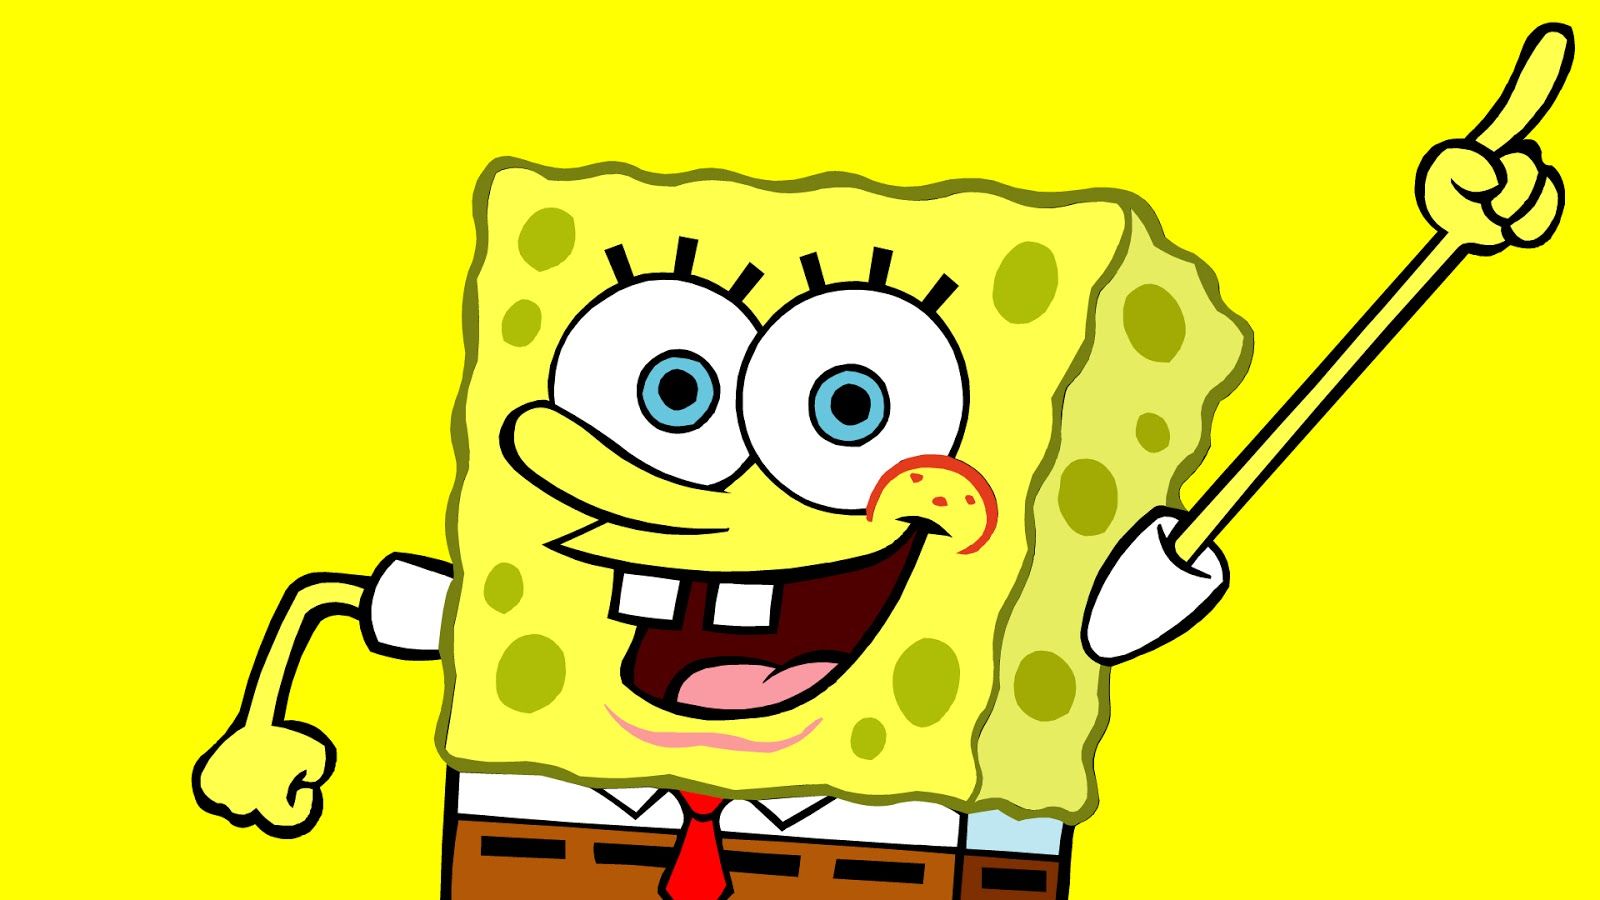 Spongebob Squarepants Wallpaper